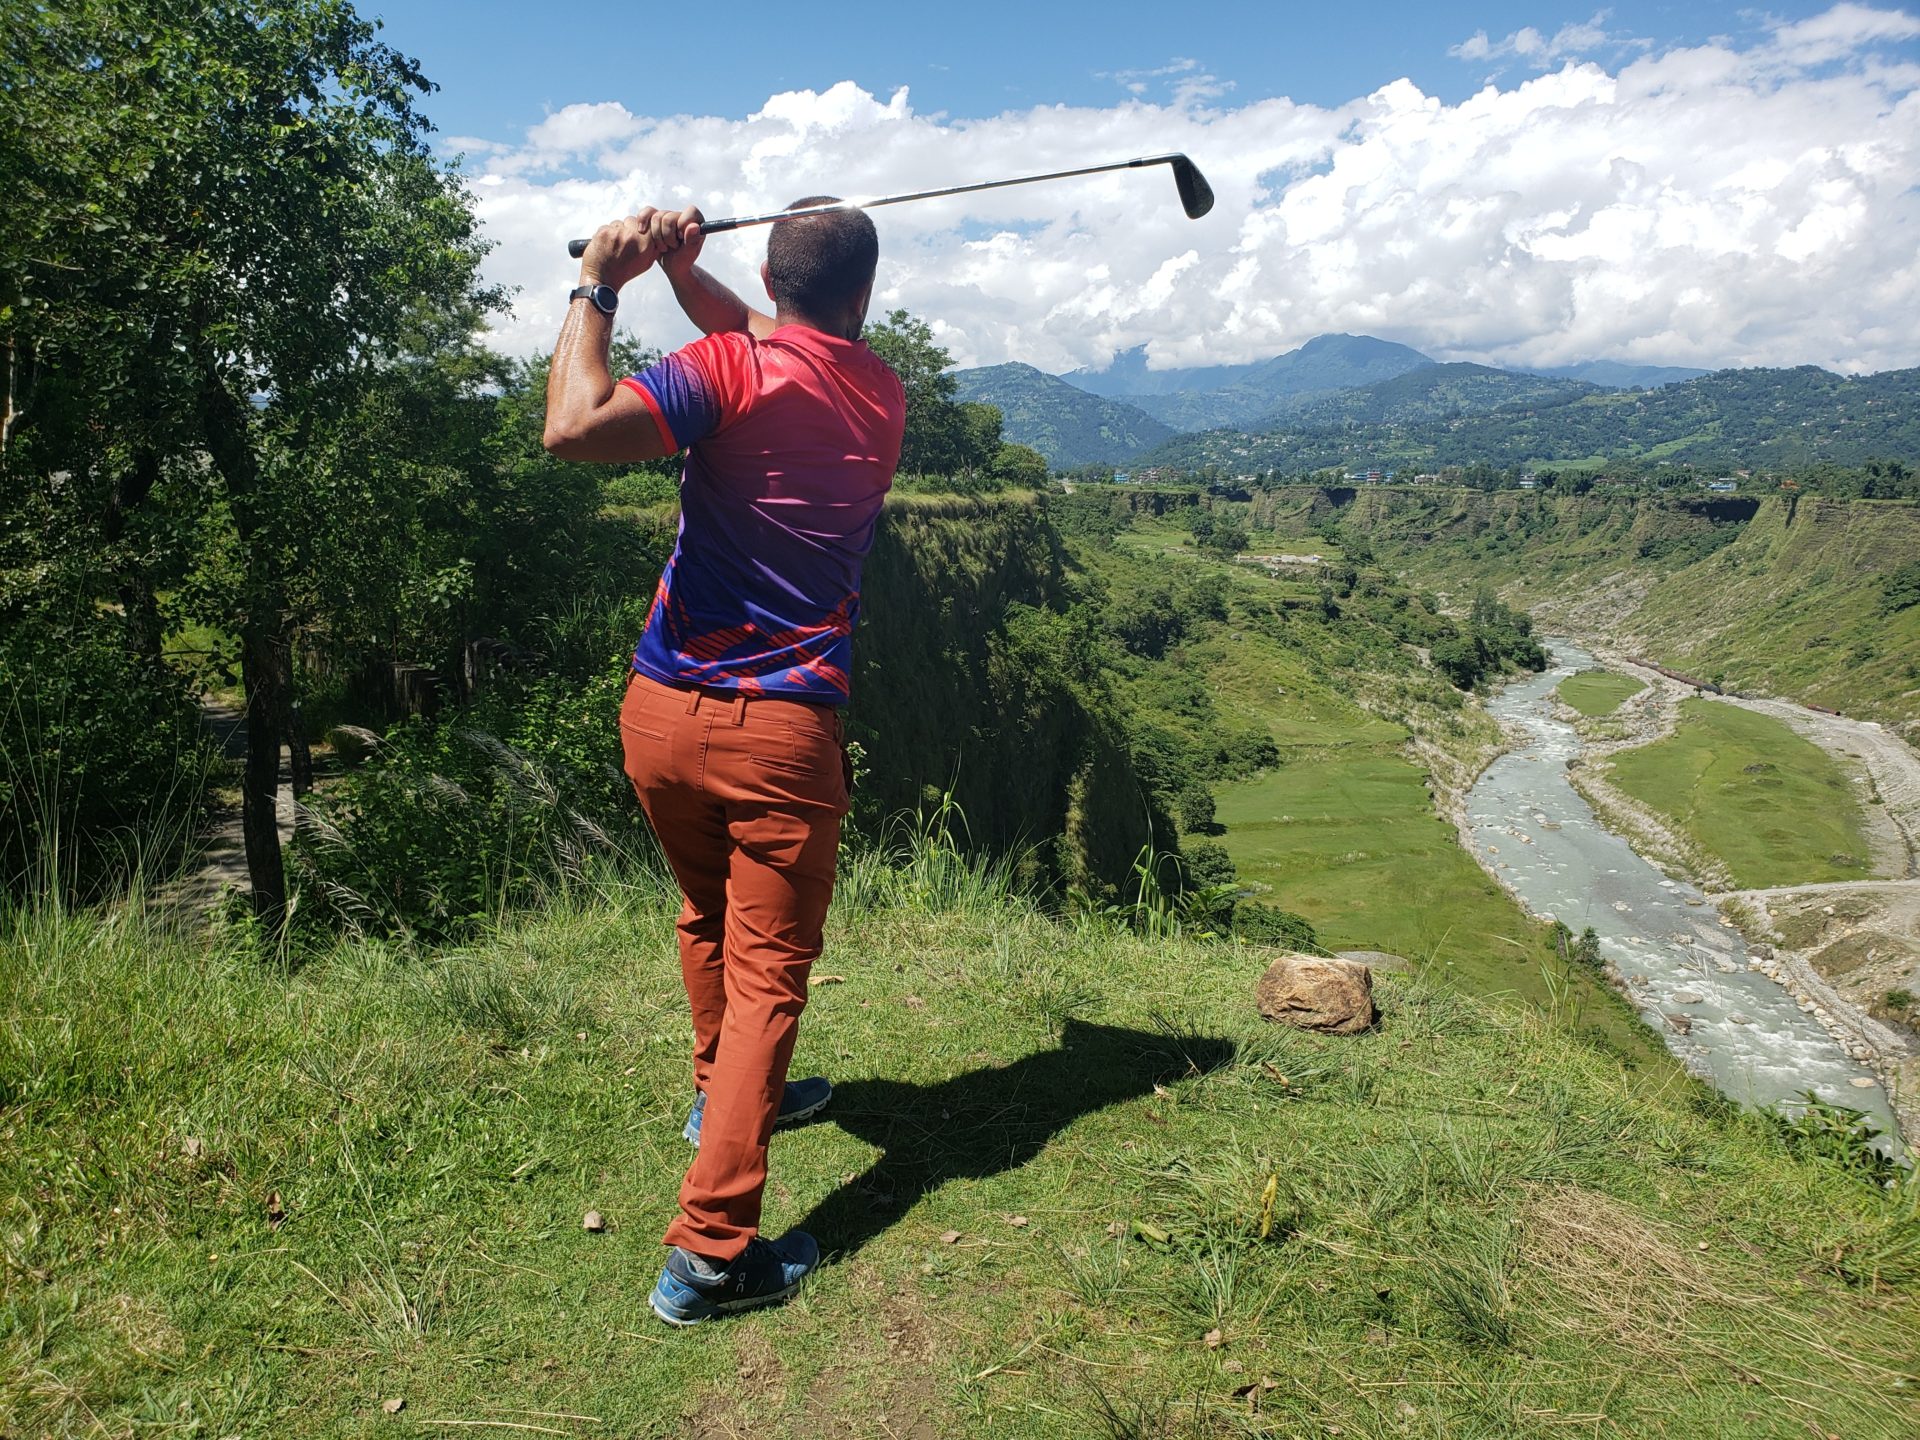 a man swinging a golf club on a grassy hill